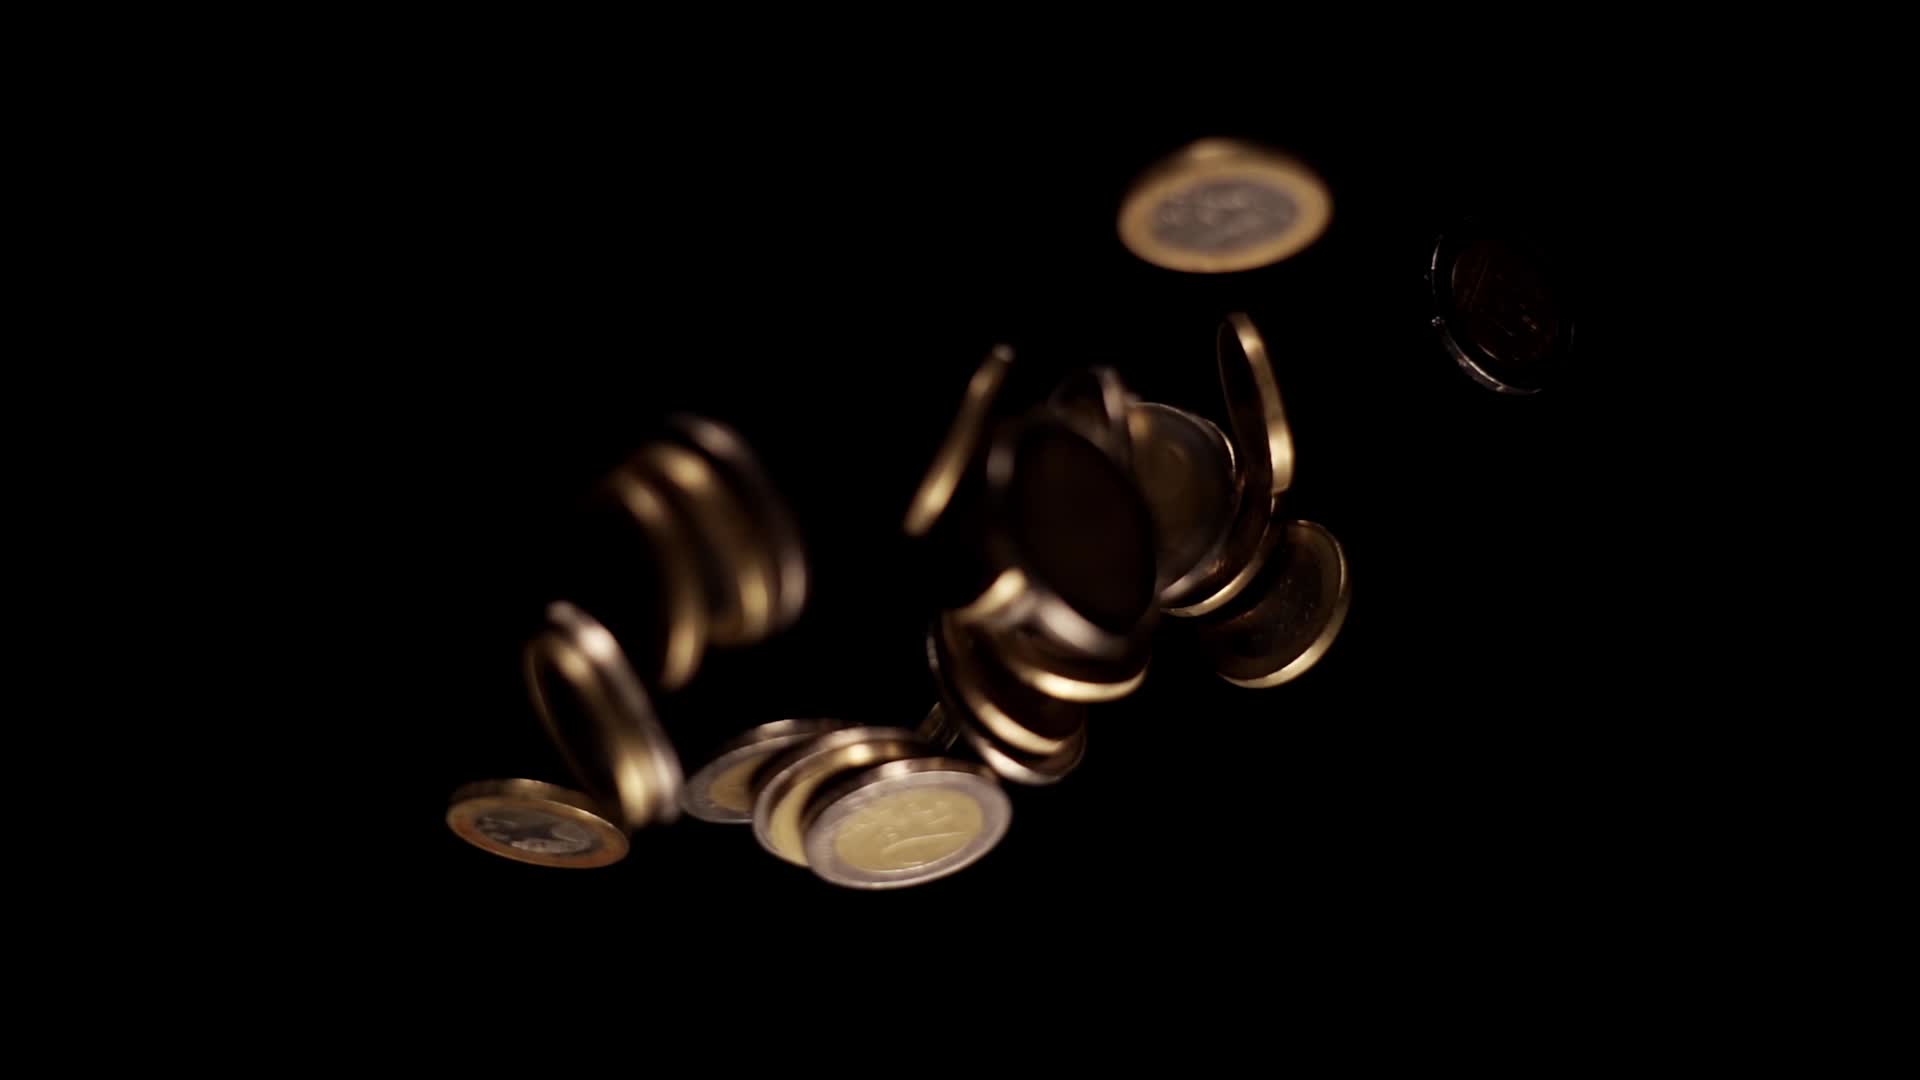 Piccole monete d’oro e d’argento cadono riflettendo la luce